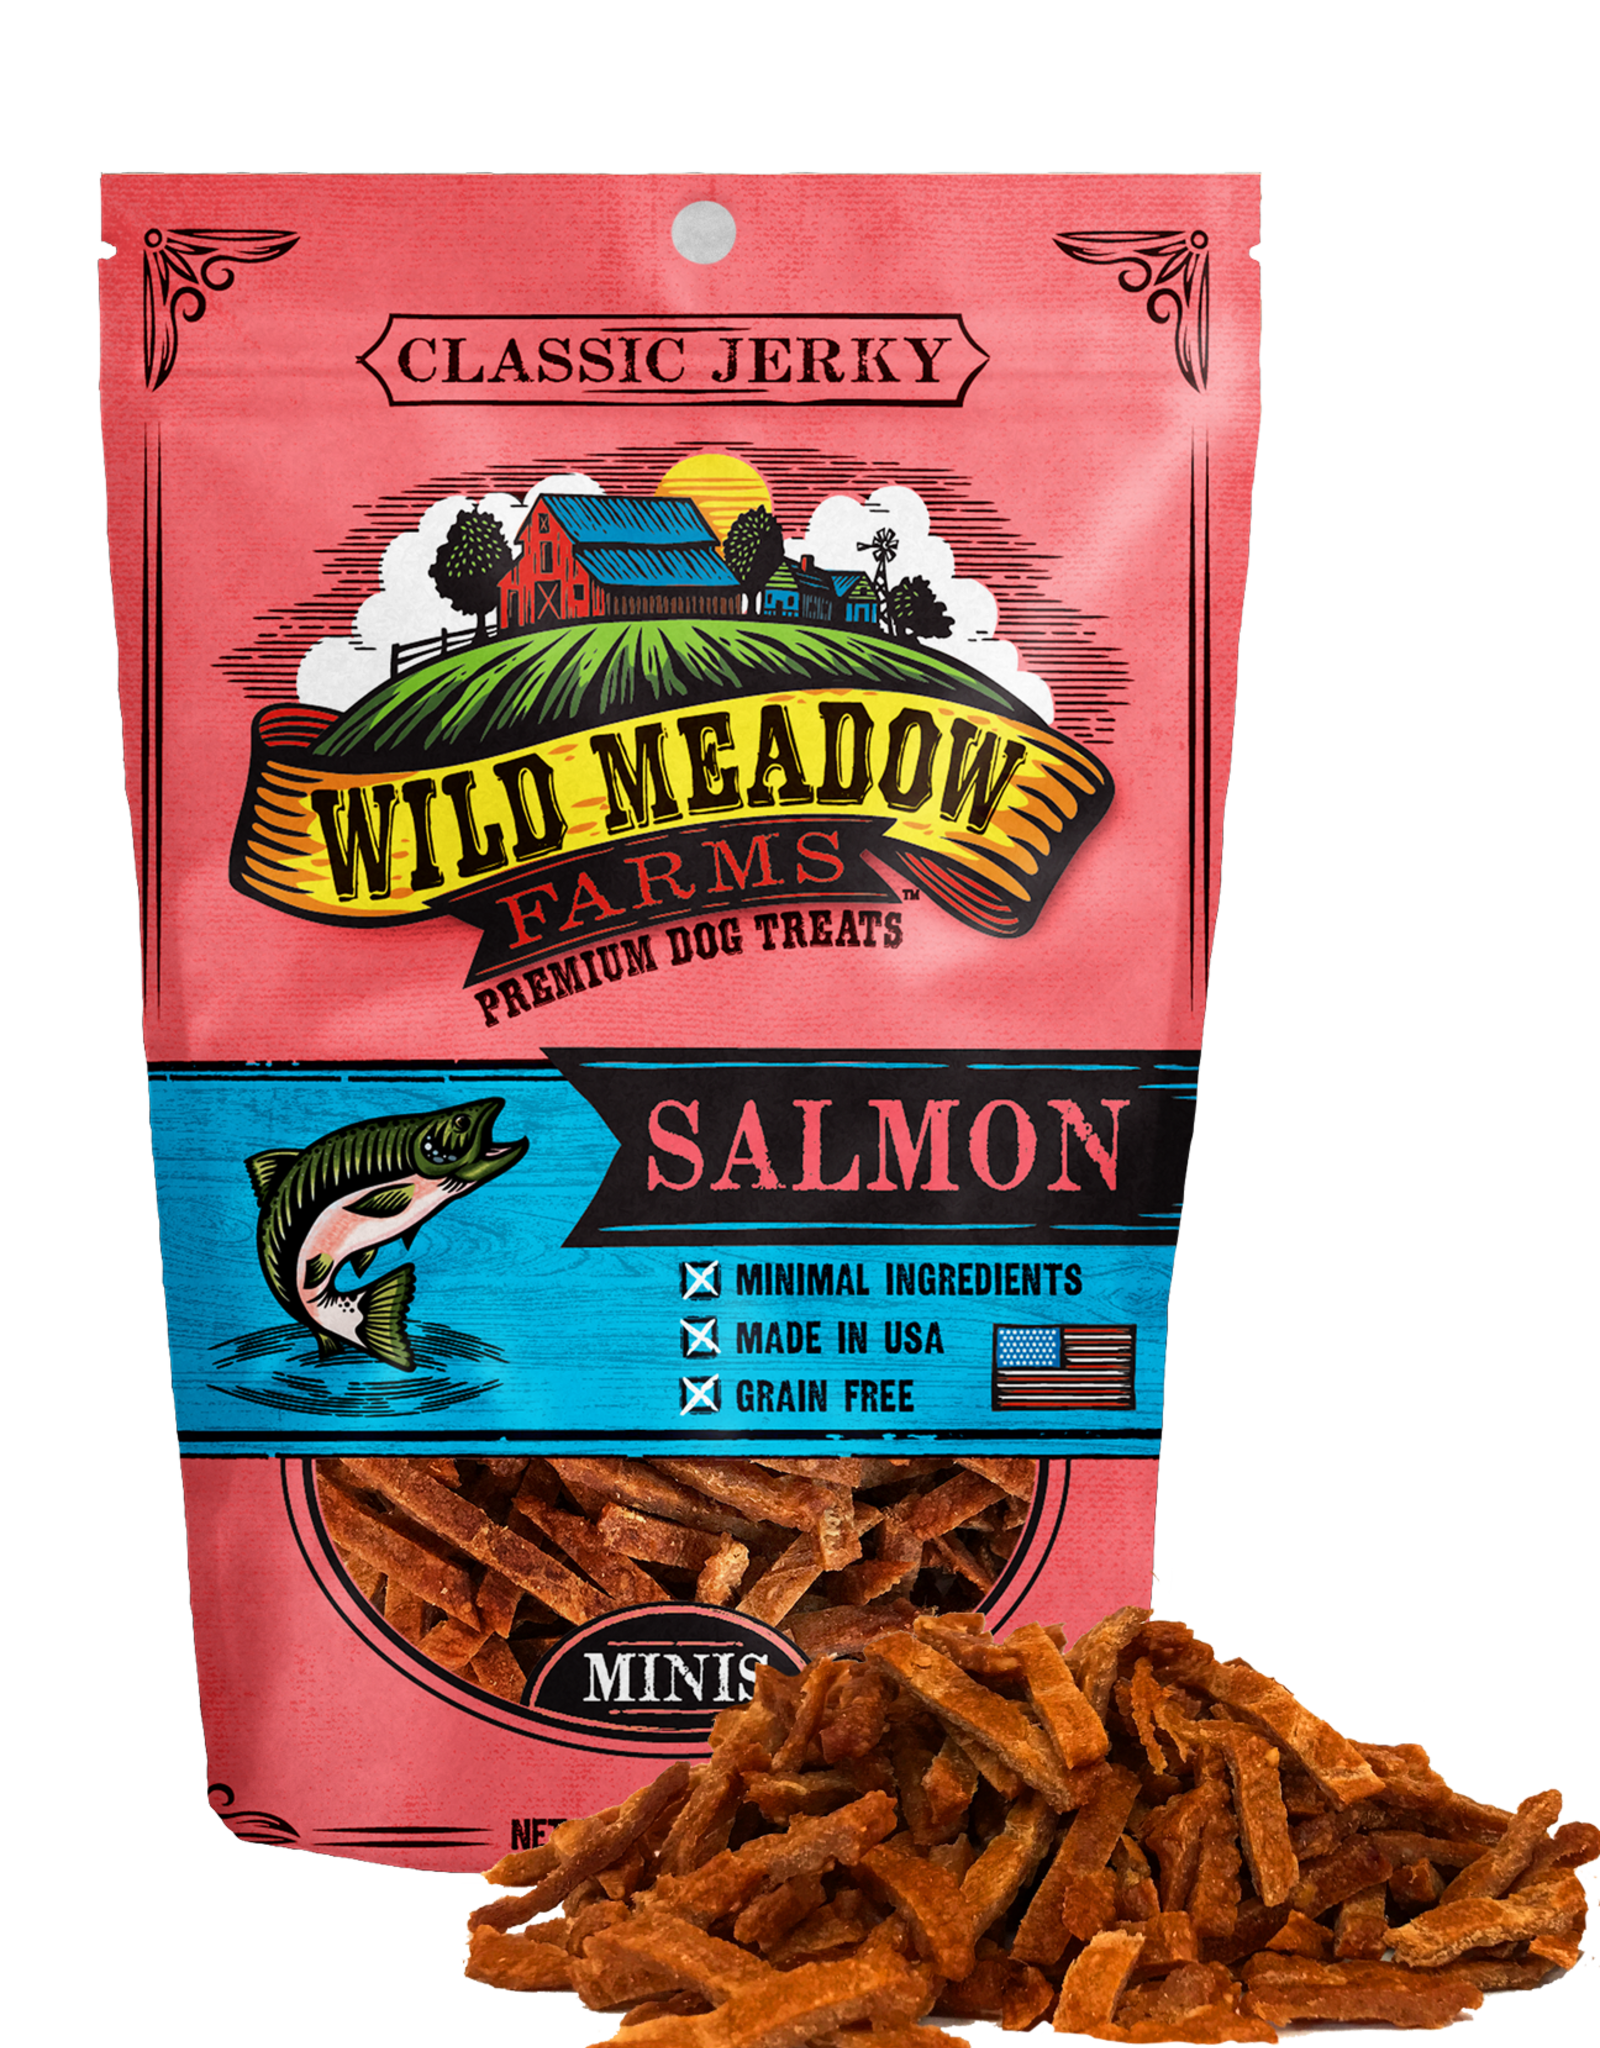 Wild Meadow Farms Classic Salmon Minis